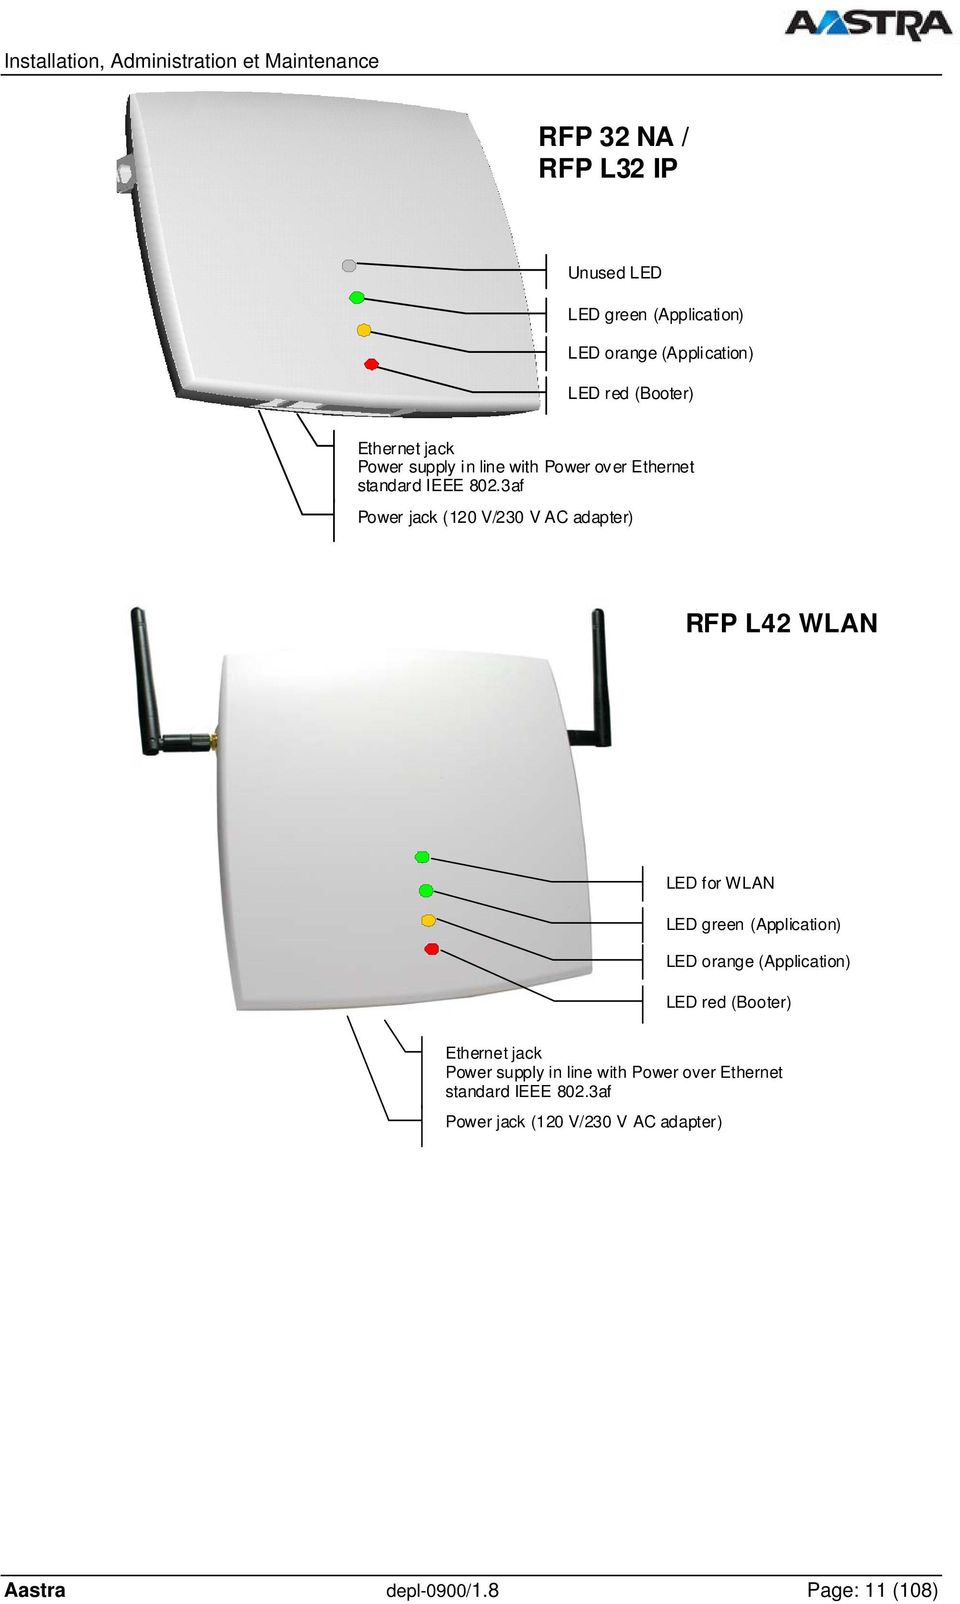 3af Power jack (120 V/230 V AC adapter) RFP L42 WLAN LED for WLAN LED green (Application) LED orange (Application)